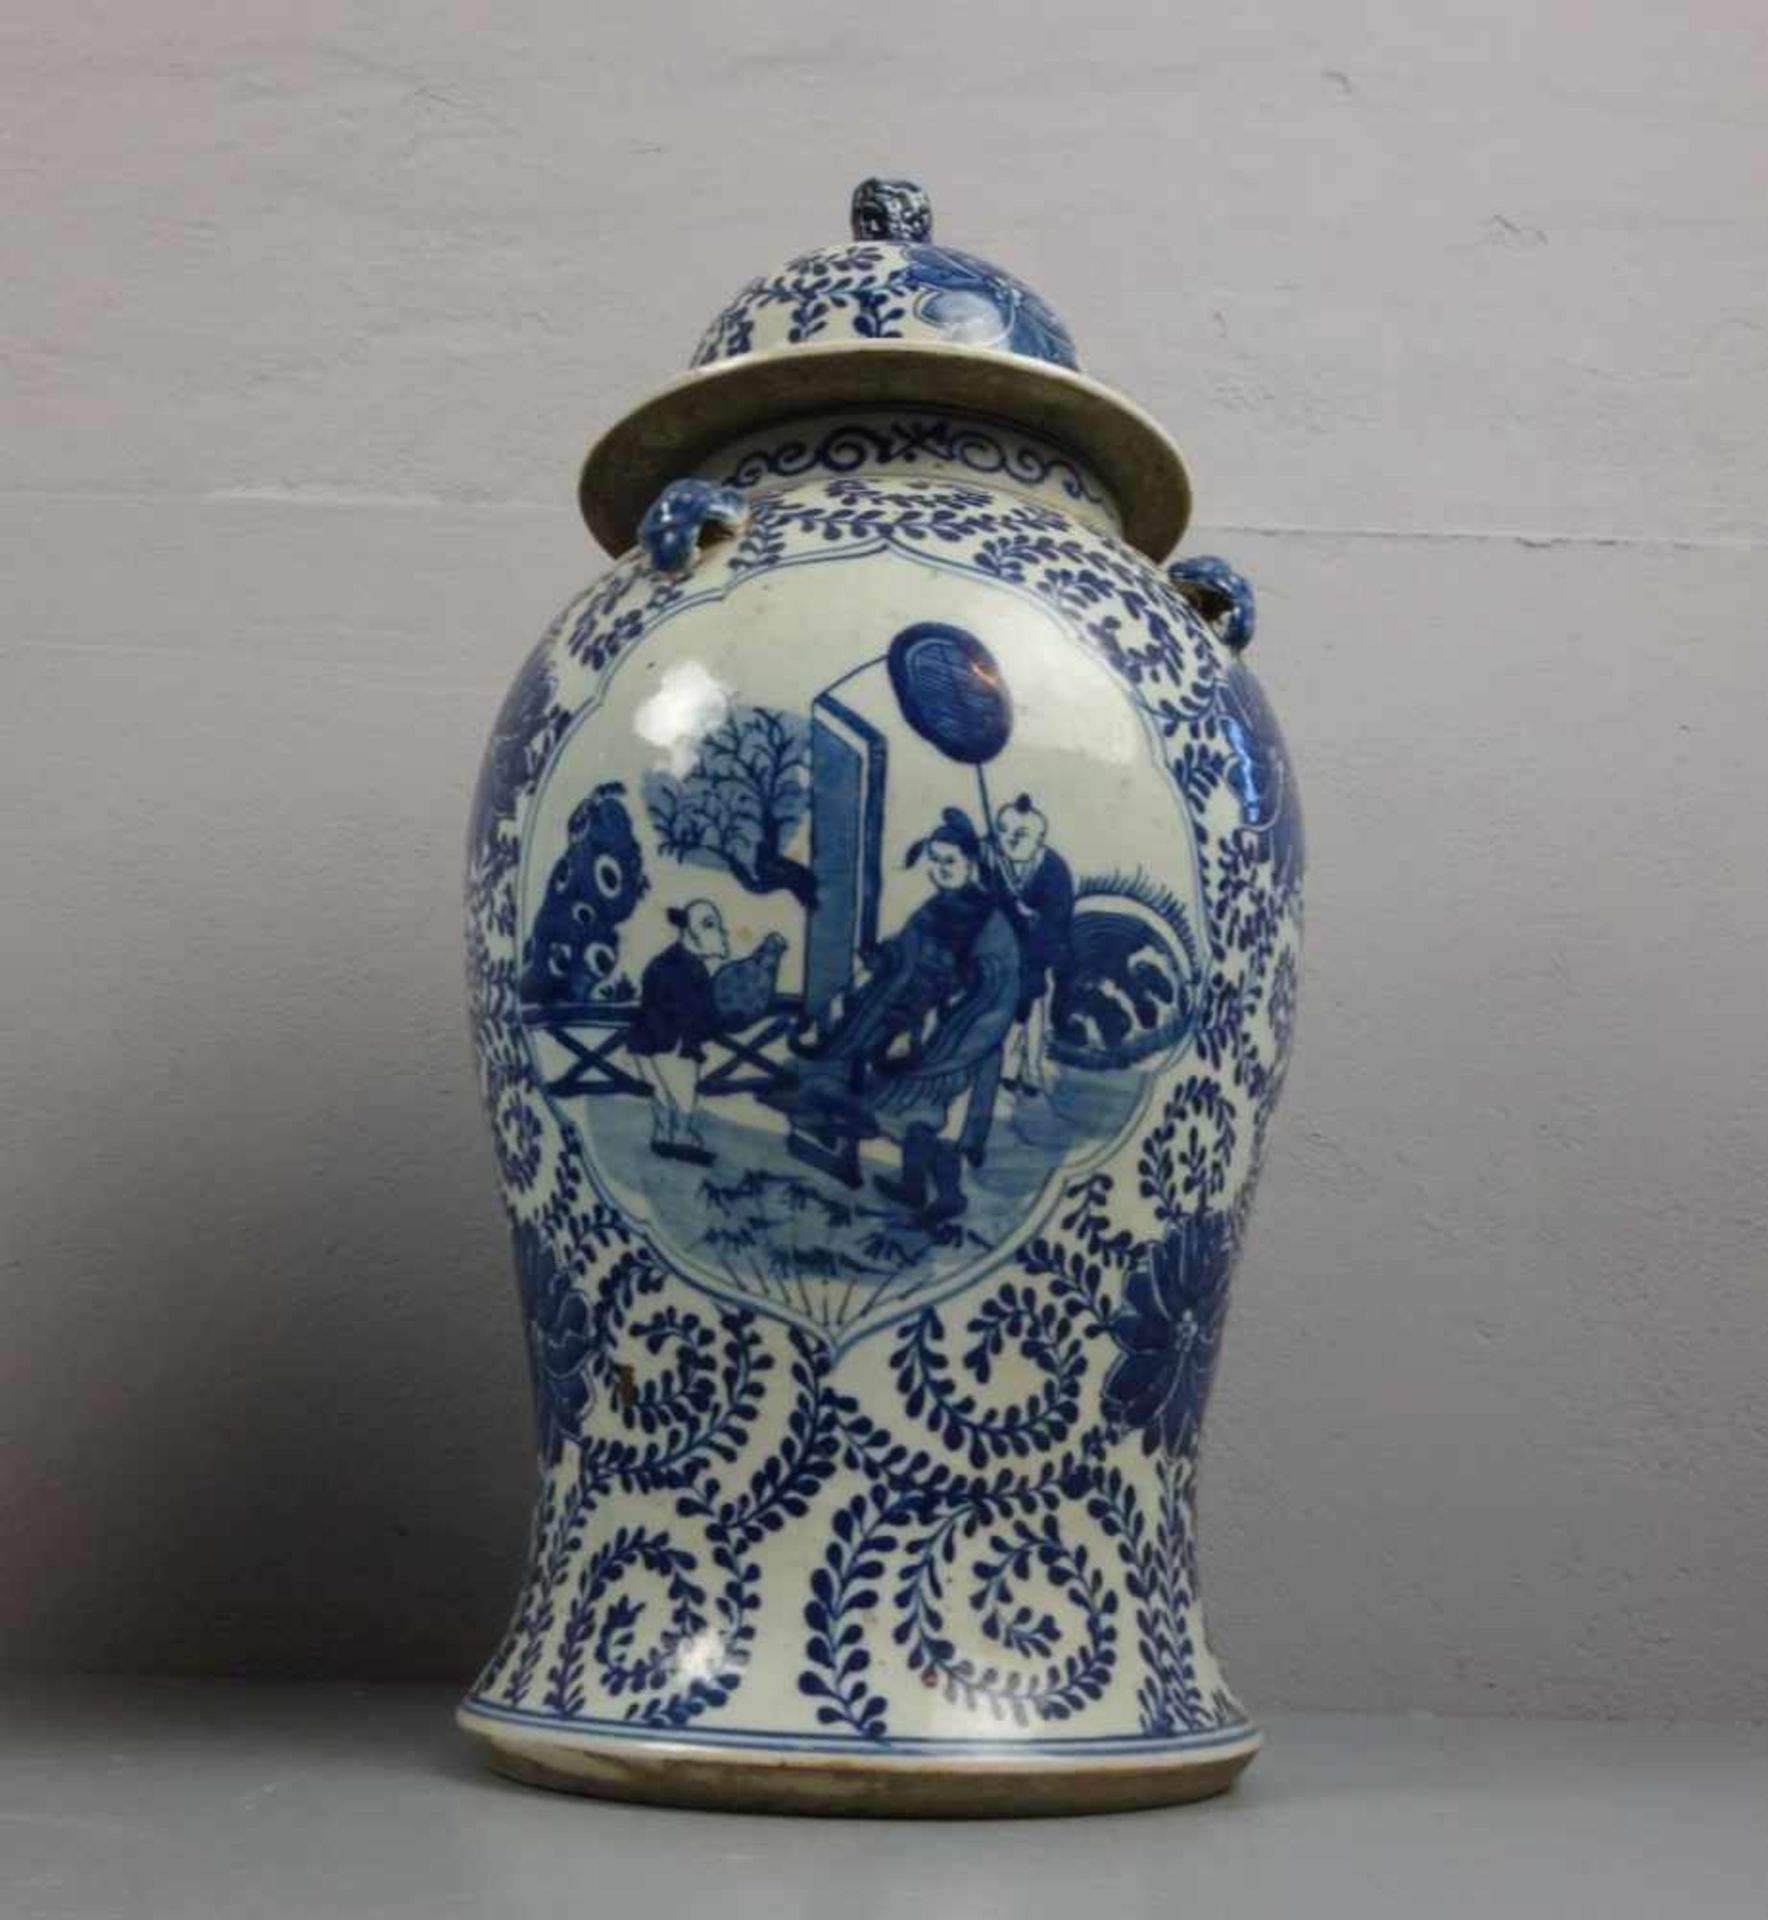 PAAR CHINESISCHE DECKELVASEN / pair of chinese vases, late Qing dynasty, Porzellan (ungemarkt), - Image 5 of 5